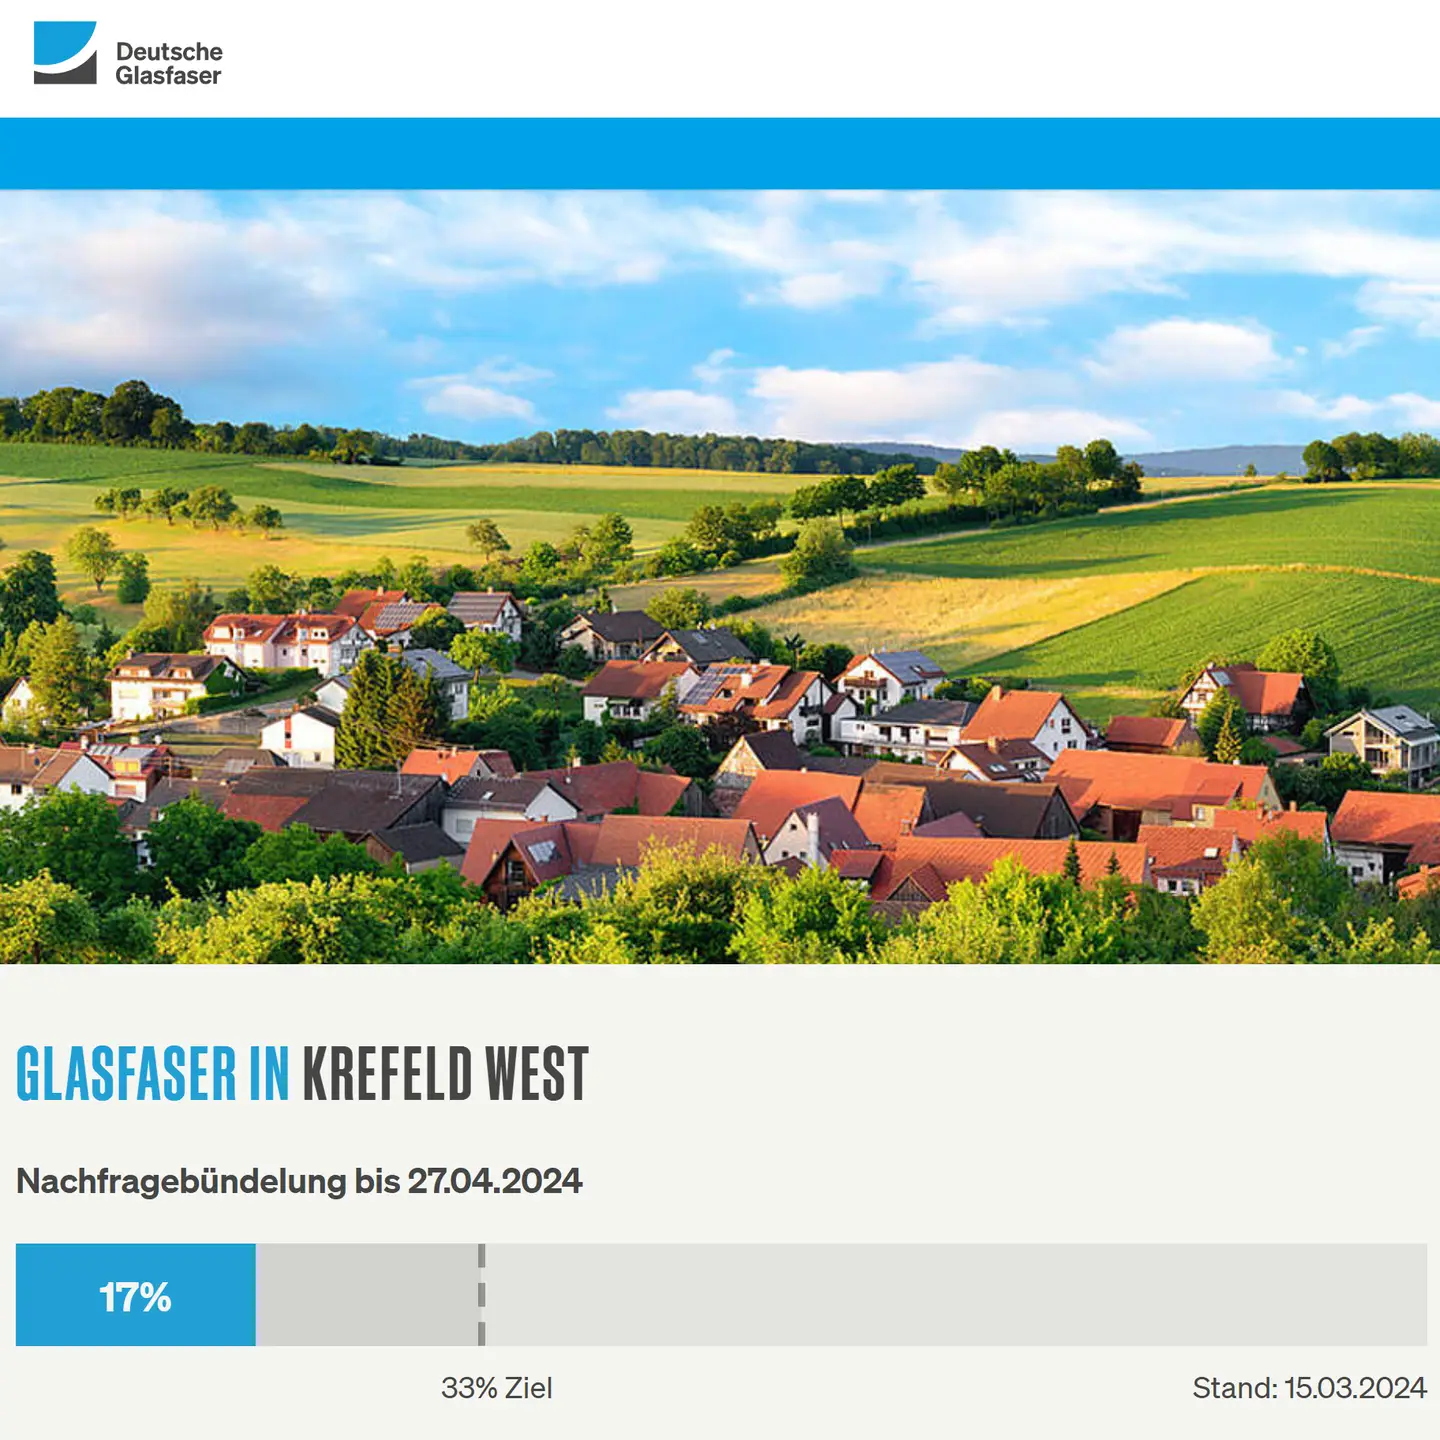 Screenshot von "Deutsche Glasfaser", oben DG Logo, ein Landschaftsbild, Schriftzüge "Glasfaser in Krefeld-West", Nachfragebündelung bis 27.4.2024, Anzeige der aktuellen Prozentzahl von 33% Ziel